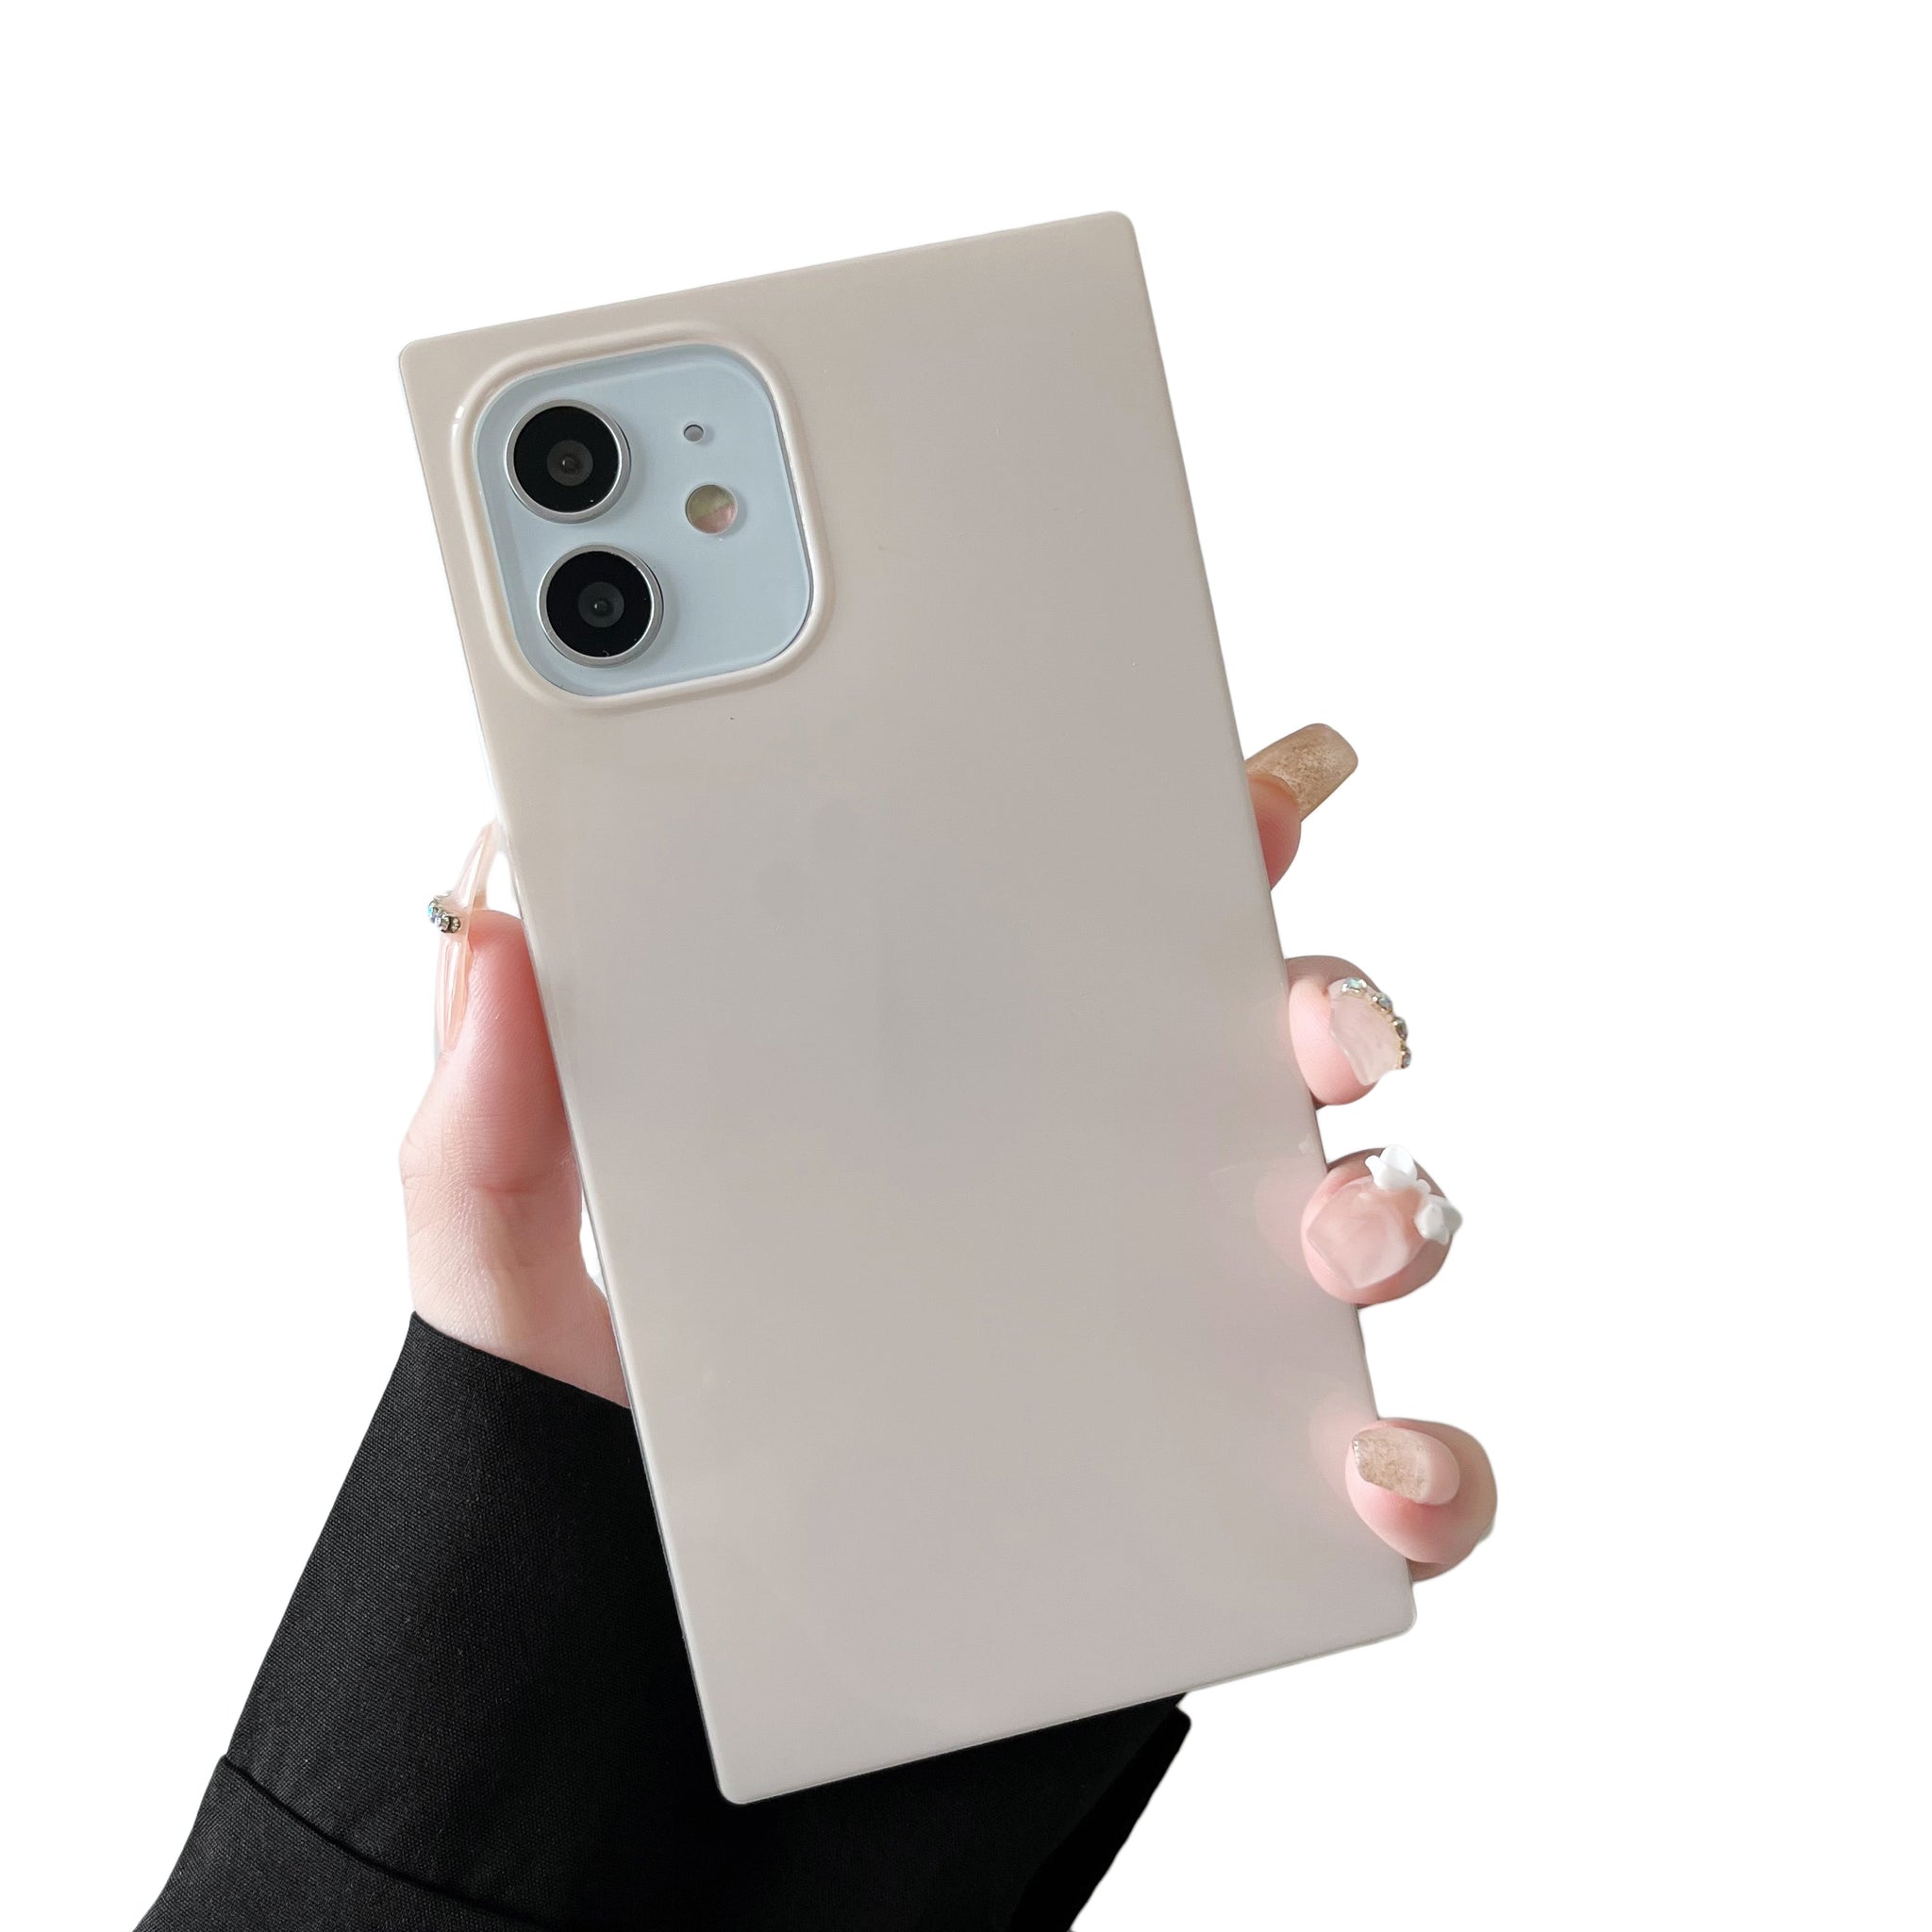 iPhone 12 Pro Max Case Square Neutral Plain Color (Antique White)